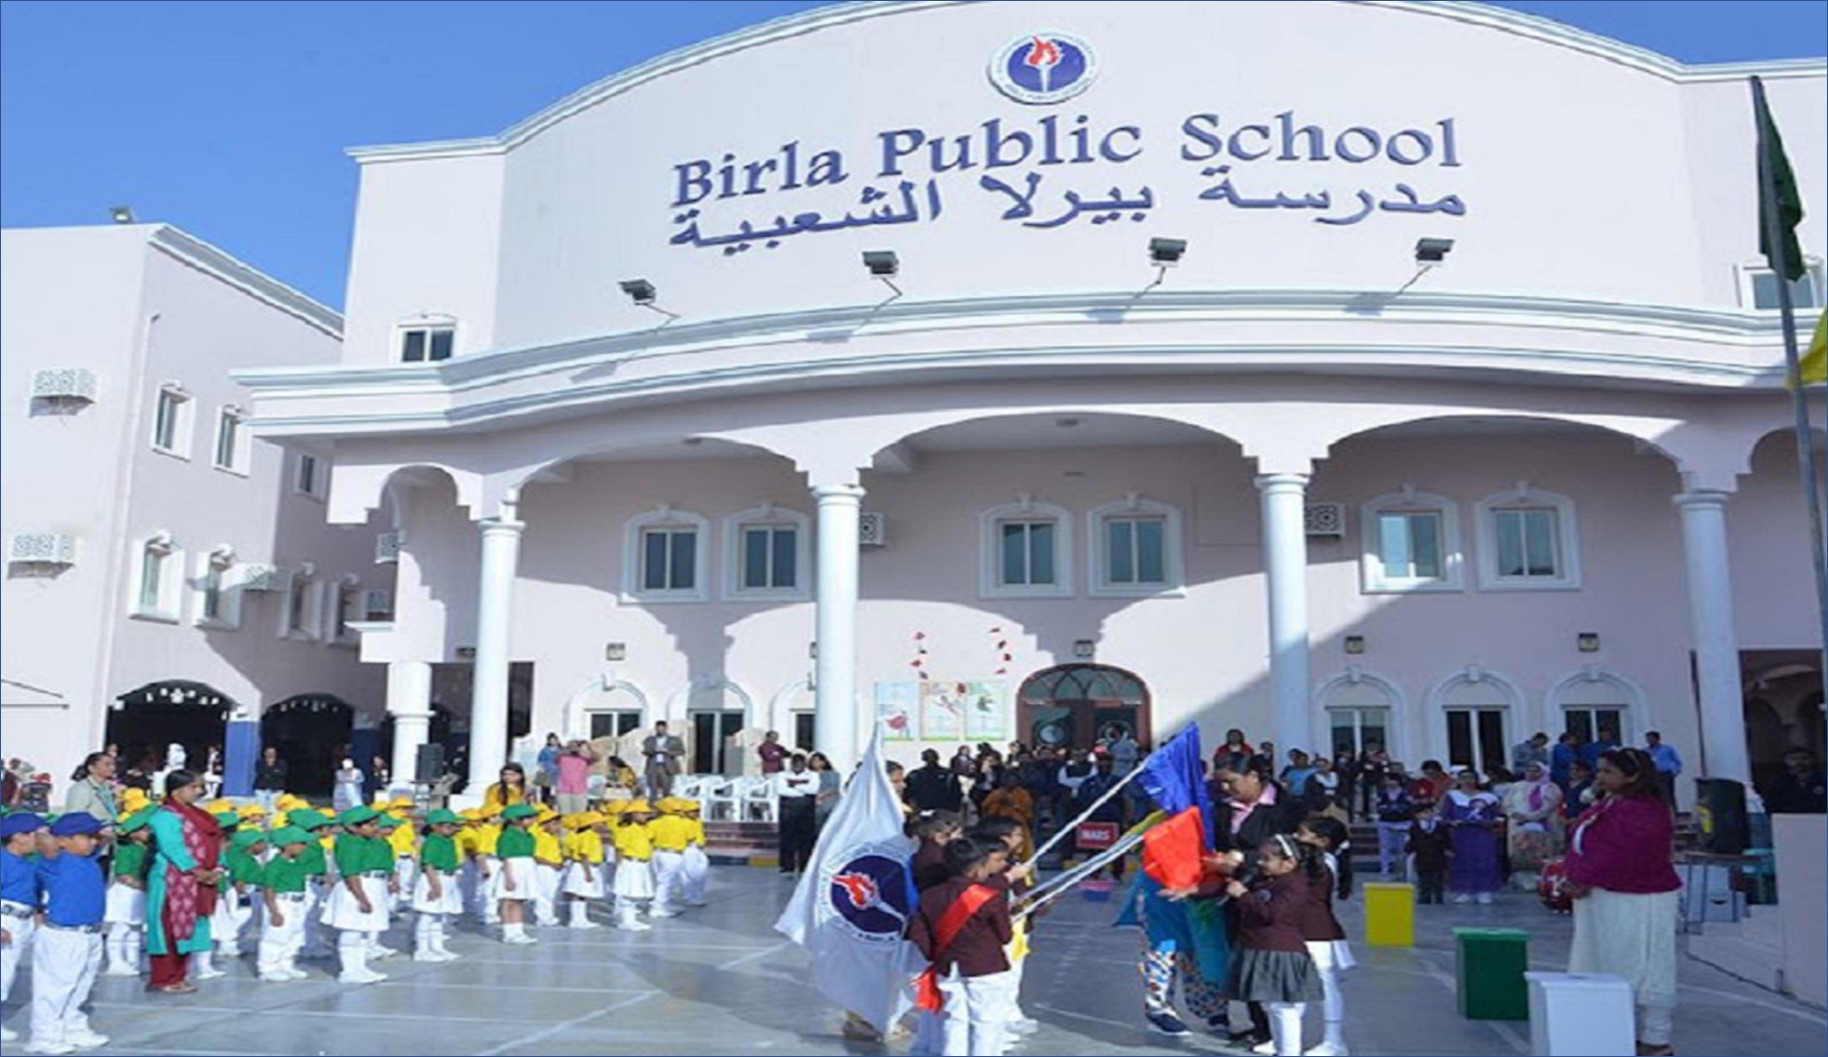 مدرسة بيرلا الشعبية قطر تعلن عن وظائف شاغرة